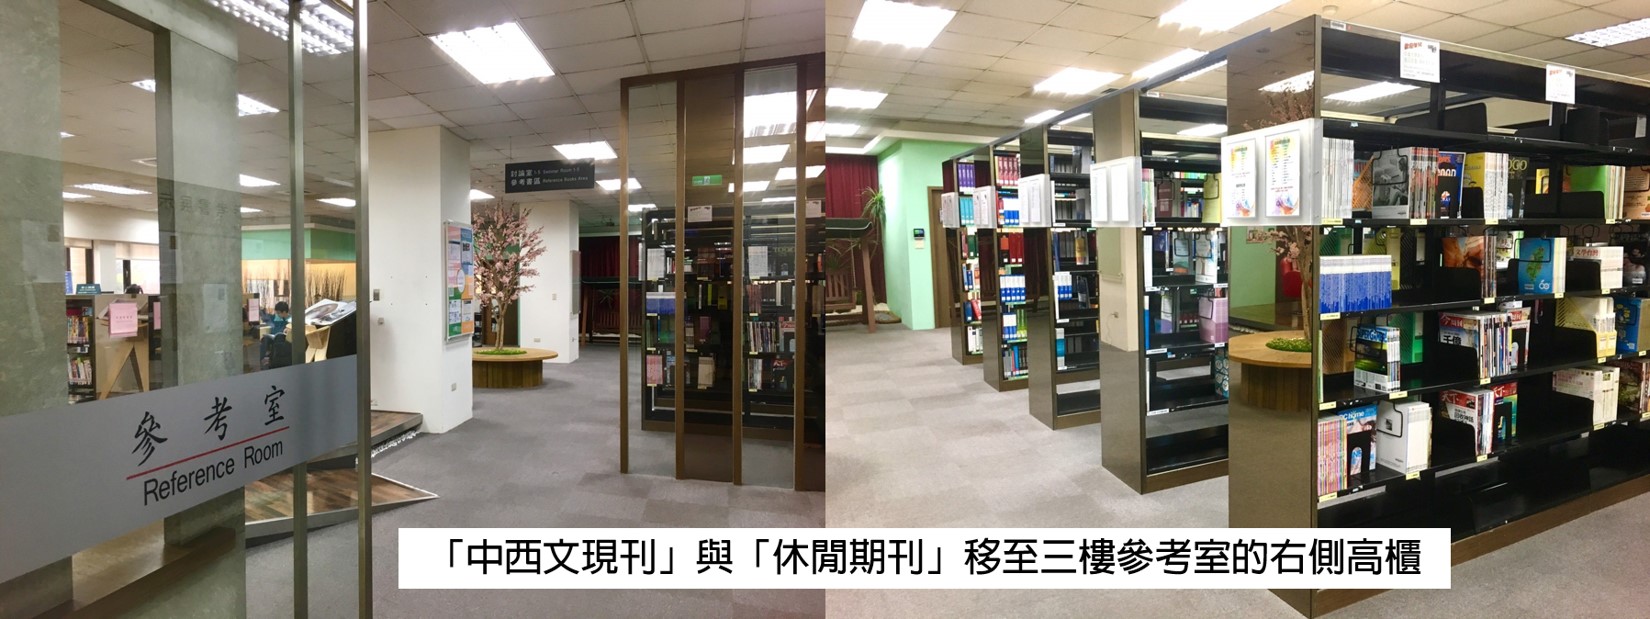 中西文現期期刊及休閒期刊陳列架位已調整至三樓參考室